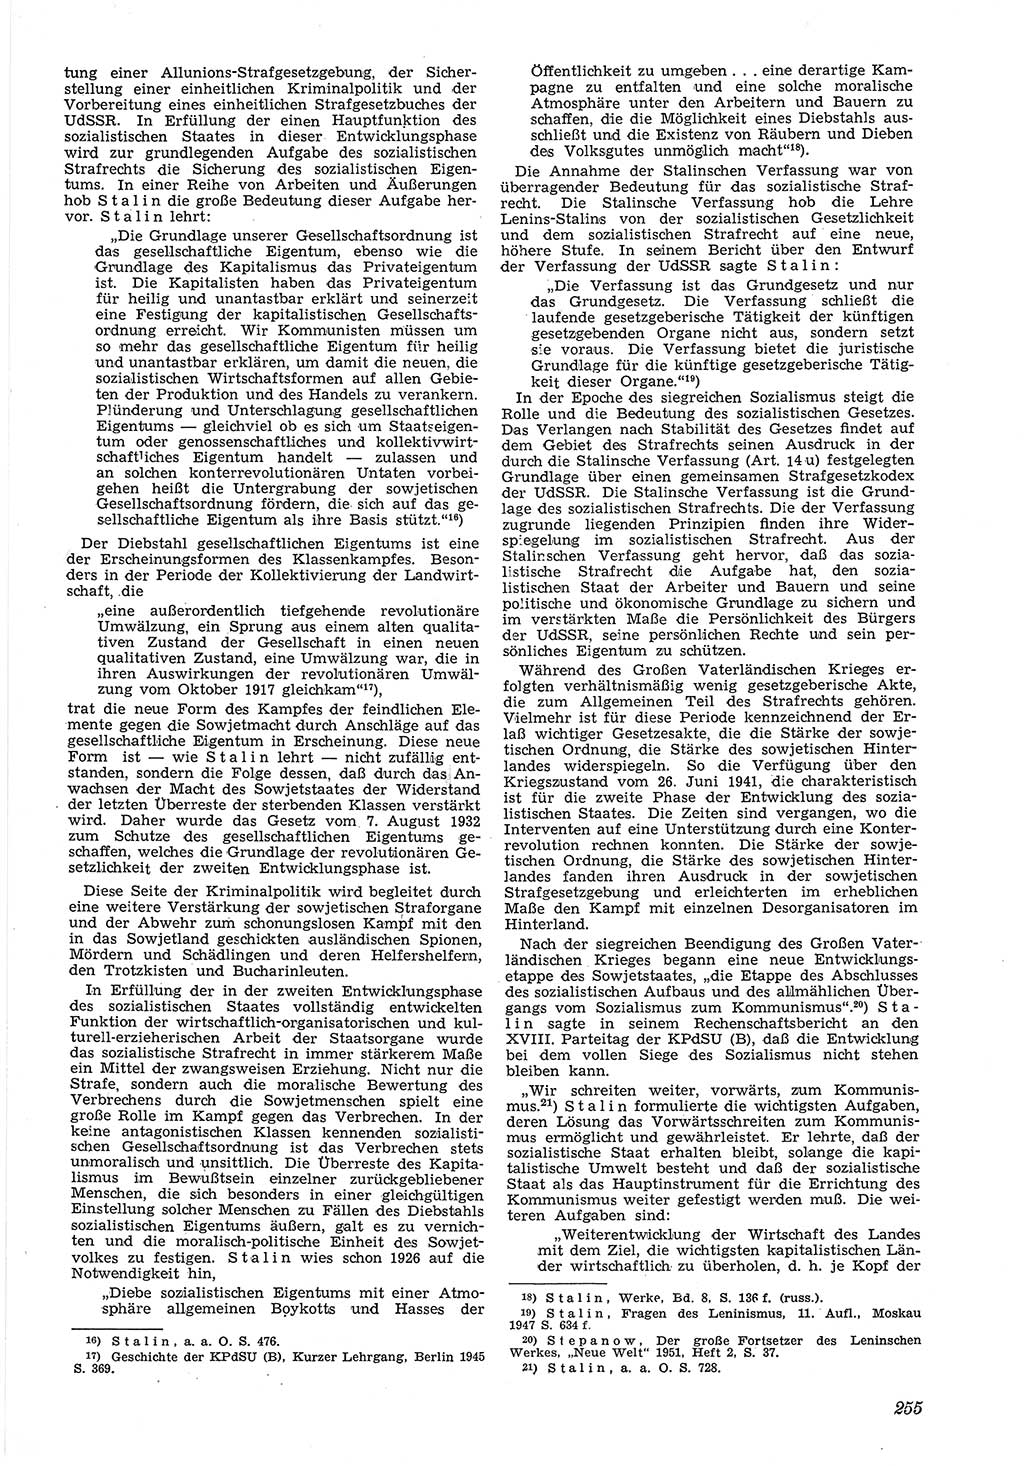 Neue Justiz (NJ), Zeitschrift für Recht und Rechtswissenschaft [Deutsche Demokratische Republik (DDR)], 5. Jahrgang 1951, Seite 255 (NJ DDR 1951, S. 255)